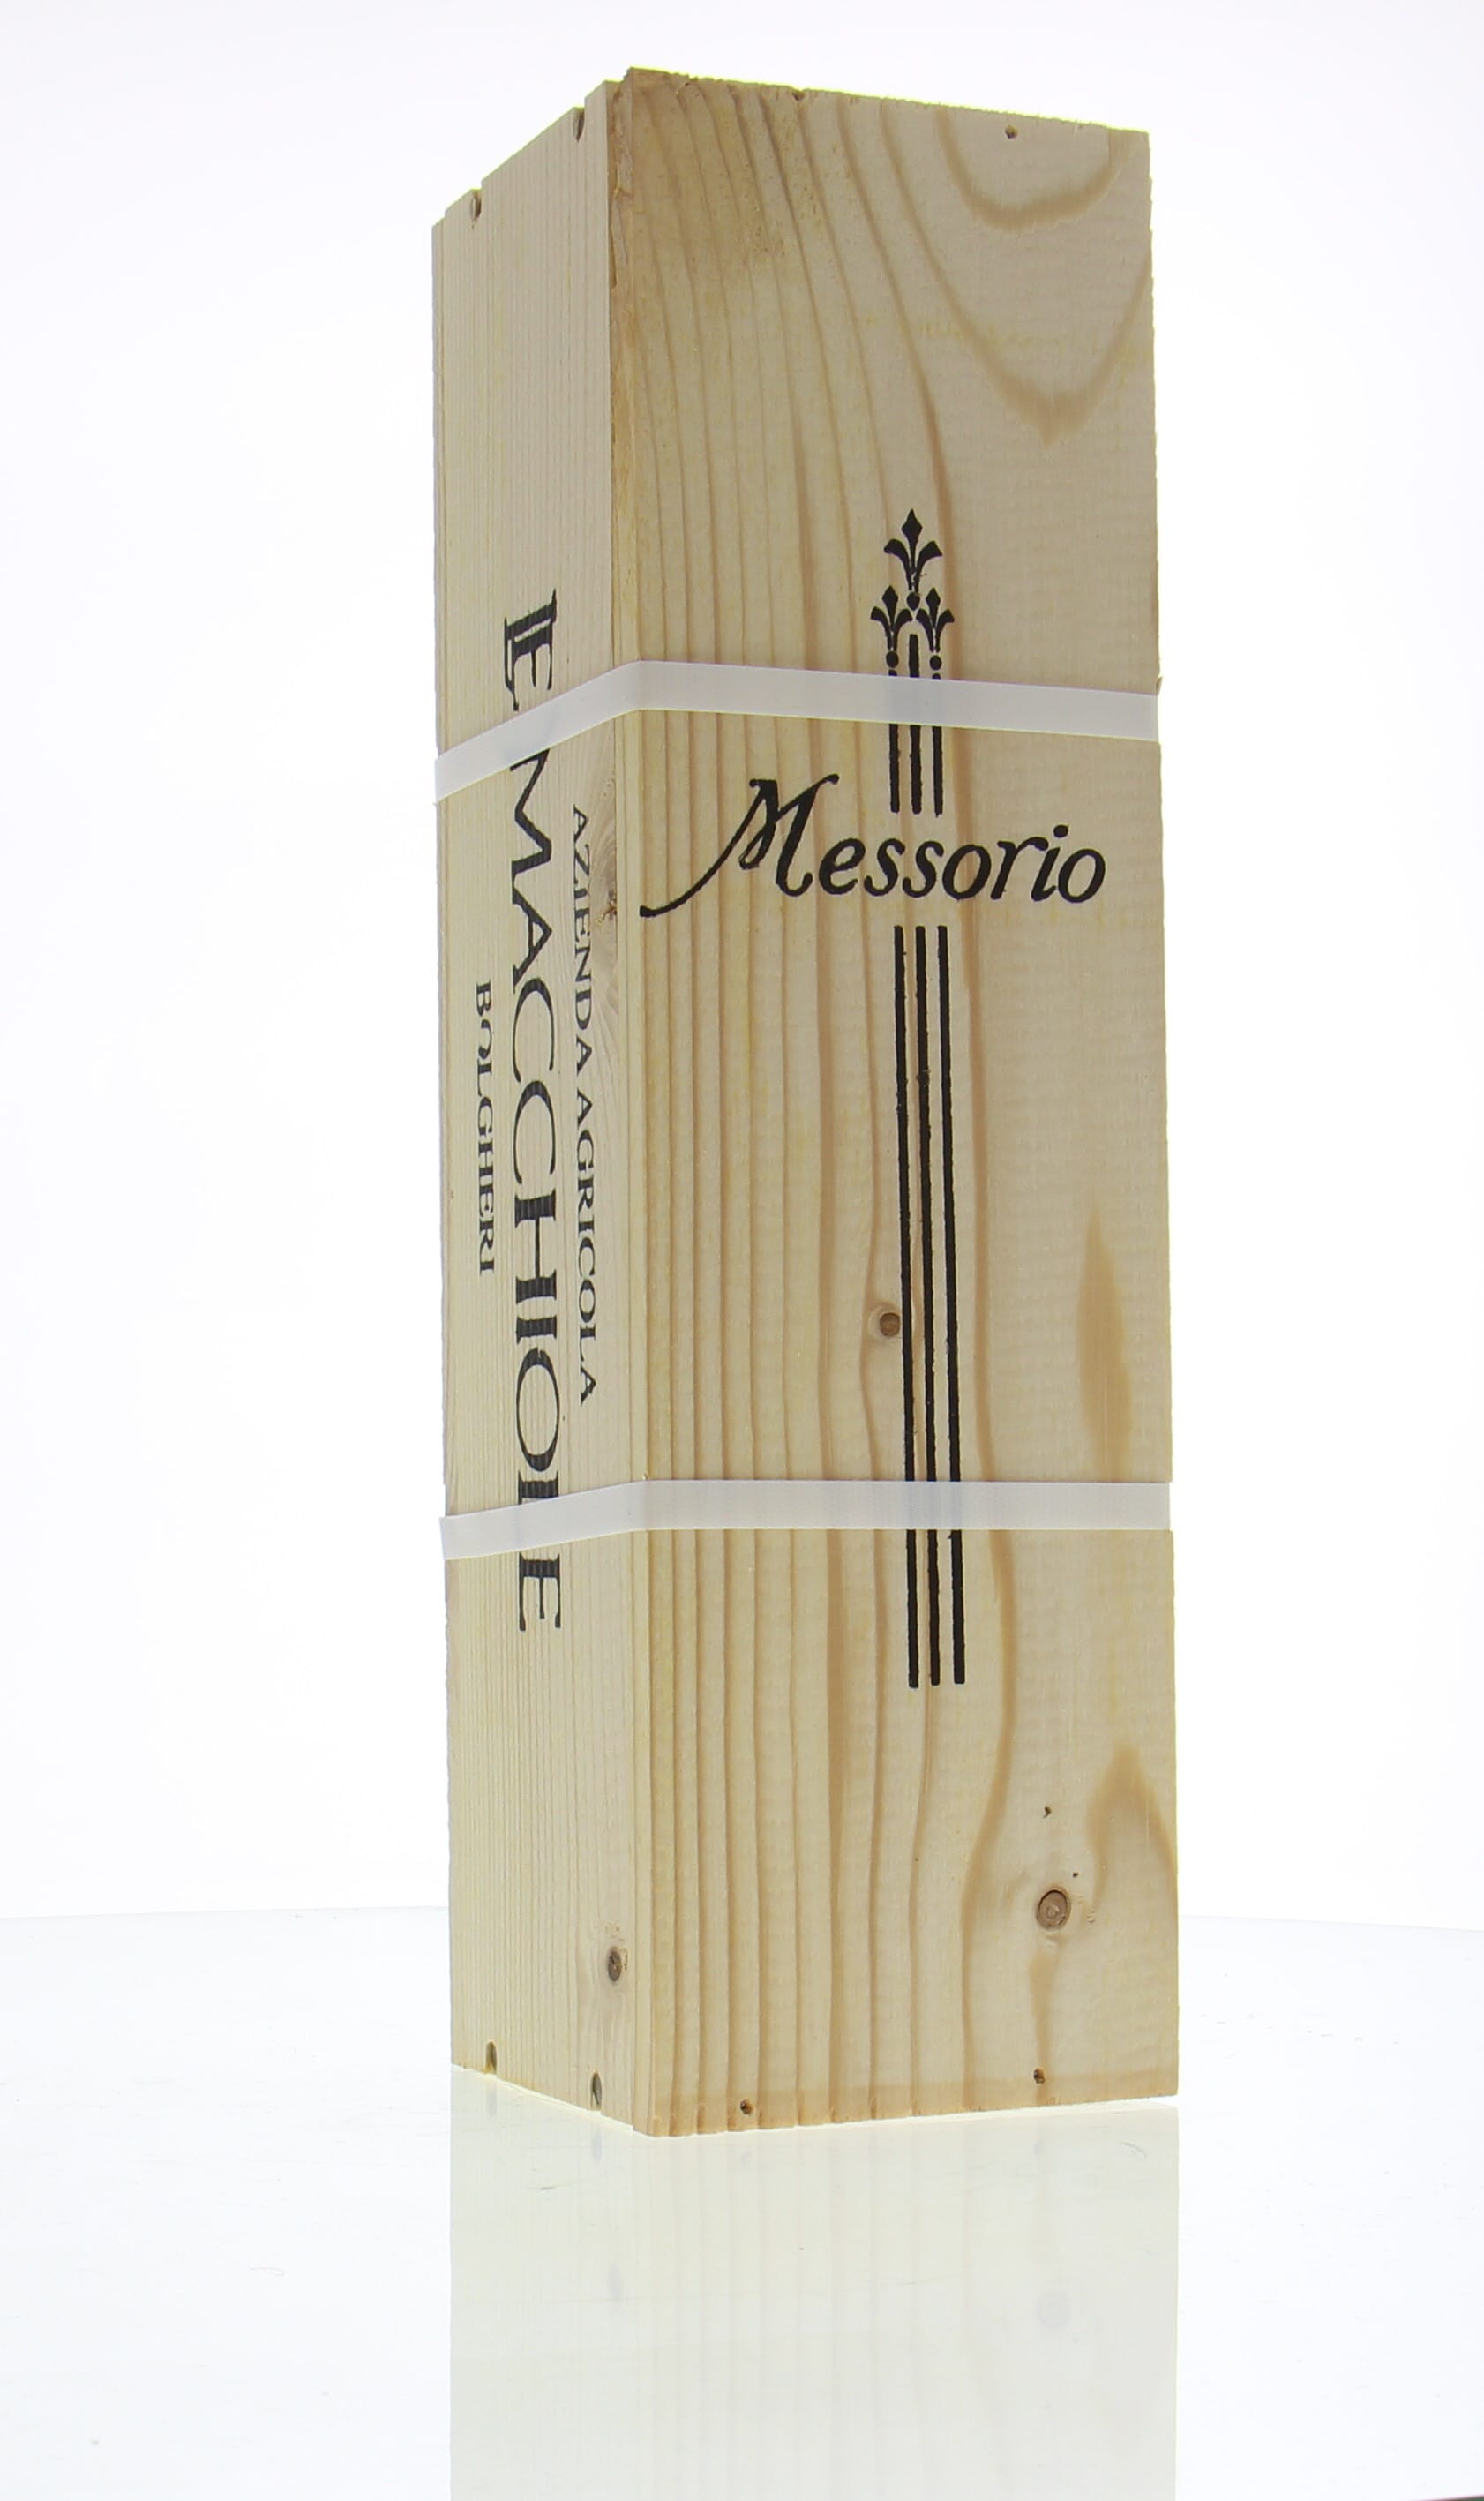 Le Macchiole - Messorio 2007 From Original Wooden Case